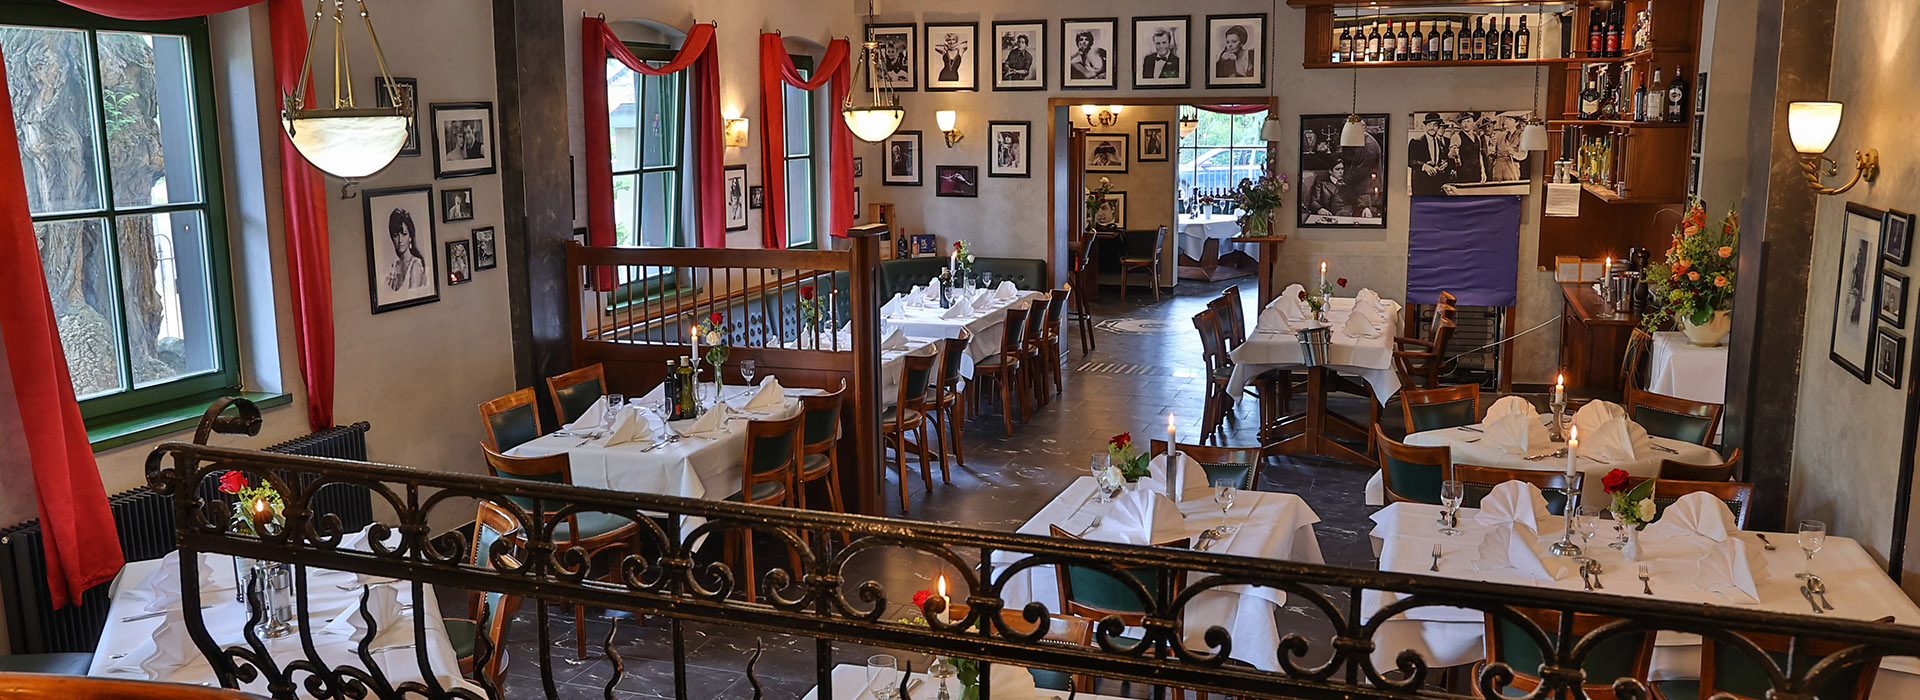 ristorante-bb-paparazzi-italienisches-restaurant-berlin-marzahn-slider-1920x700-slide2